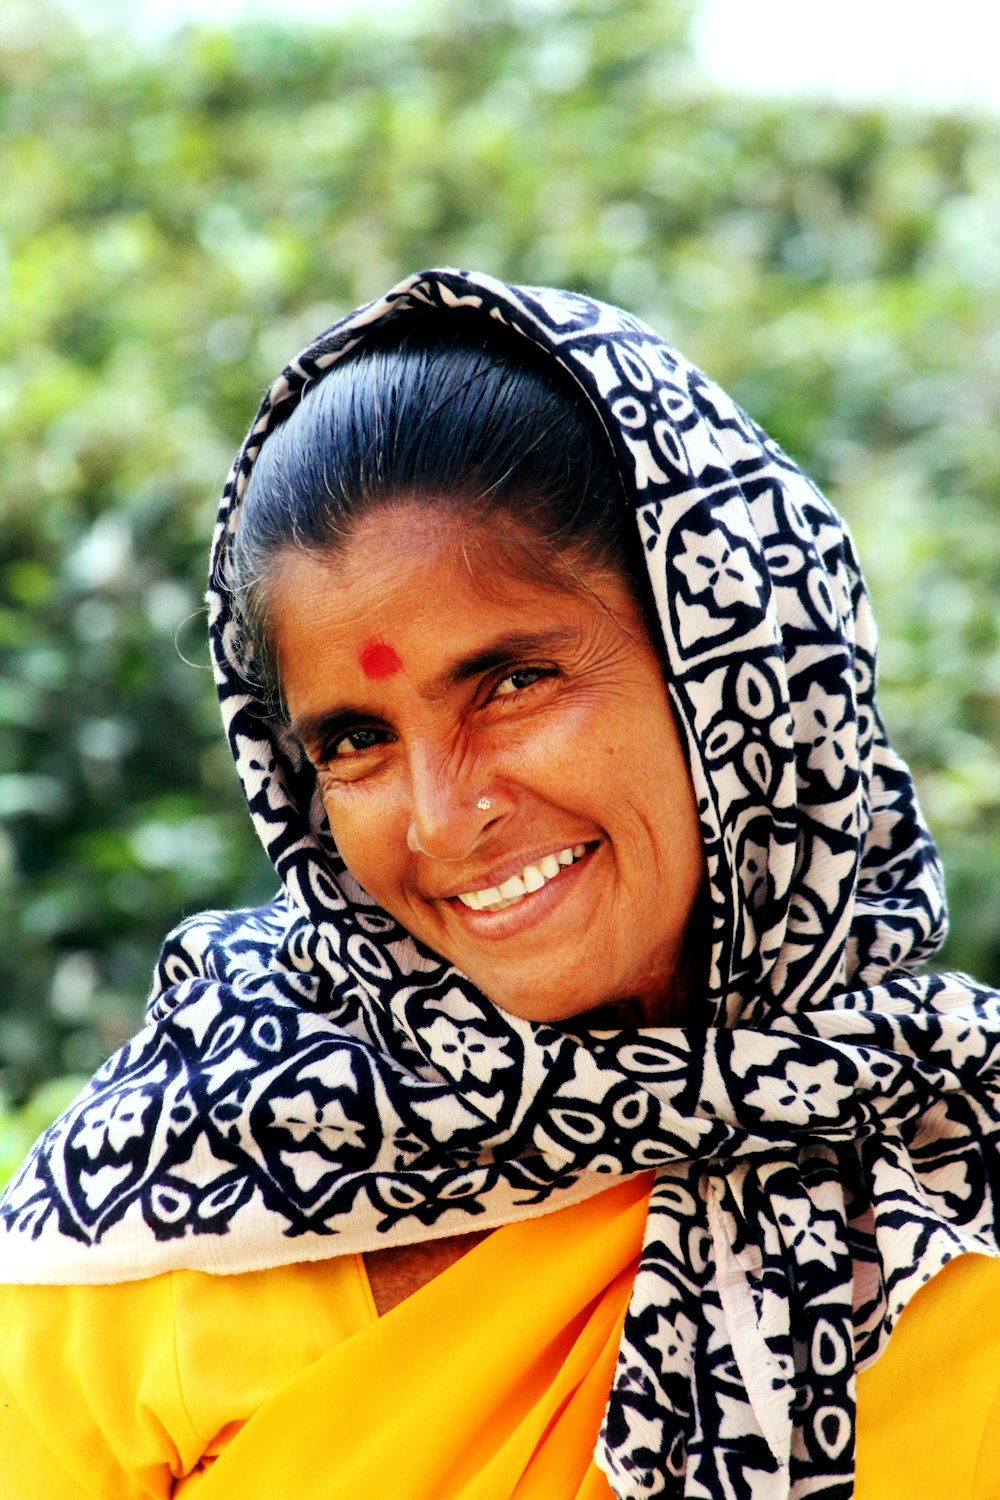 Femme portant une écharpe florale blanche et noire tout en souriant